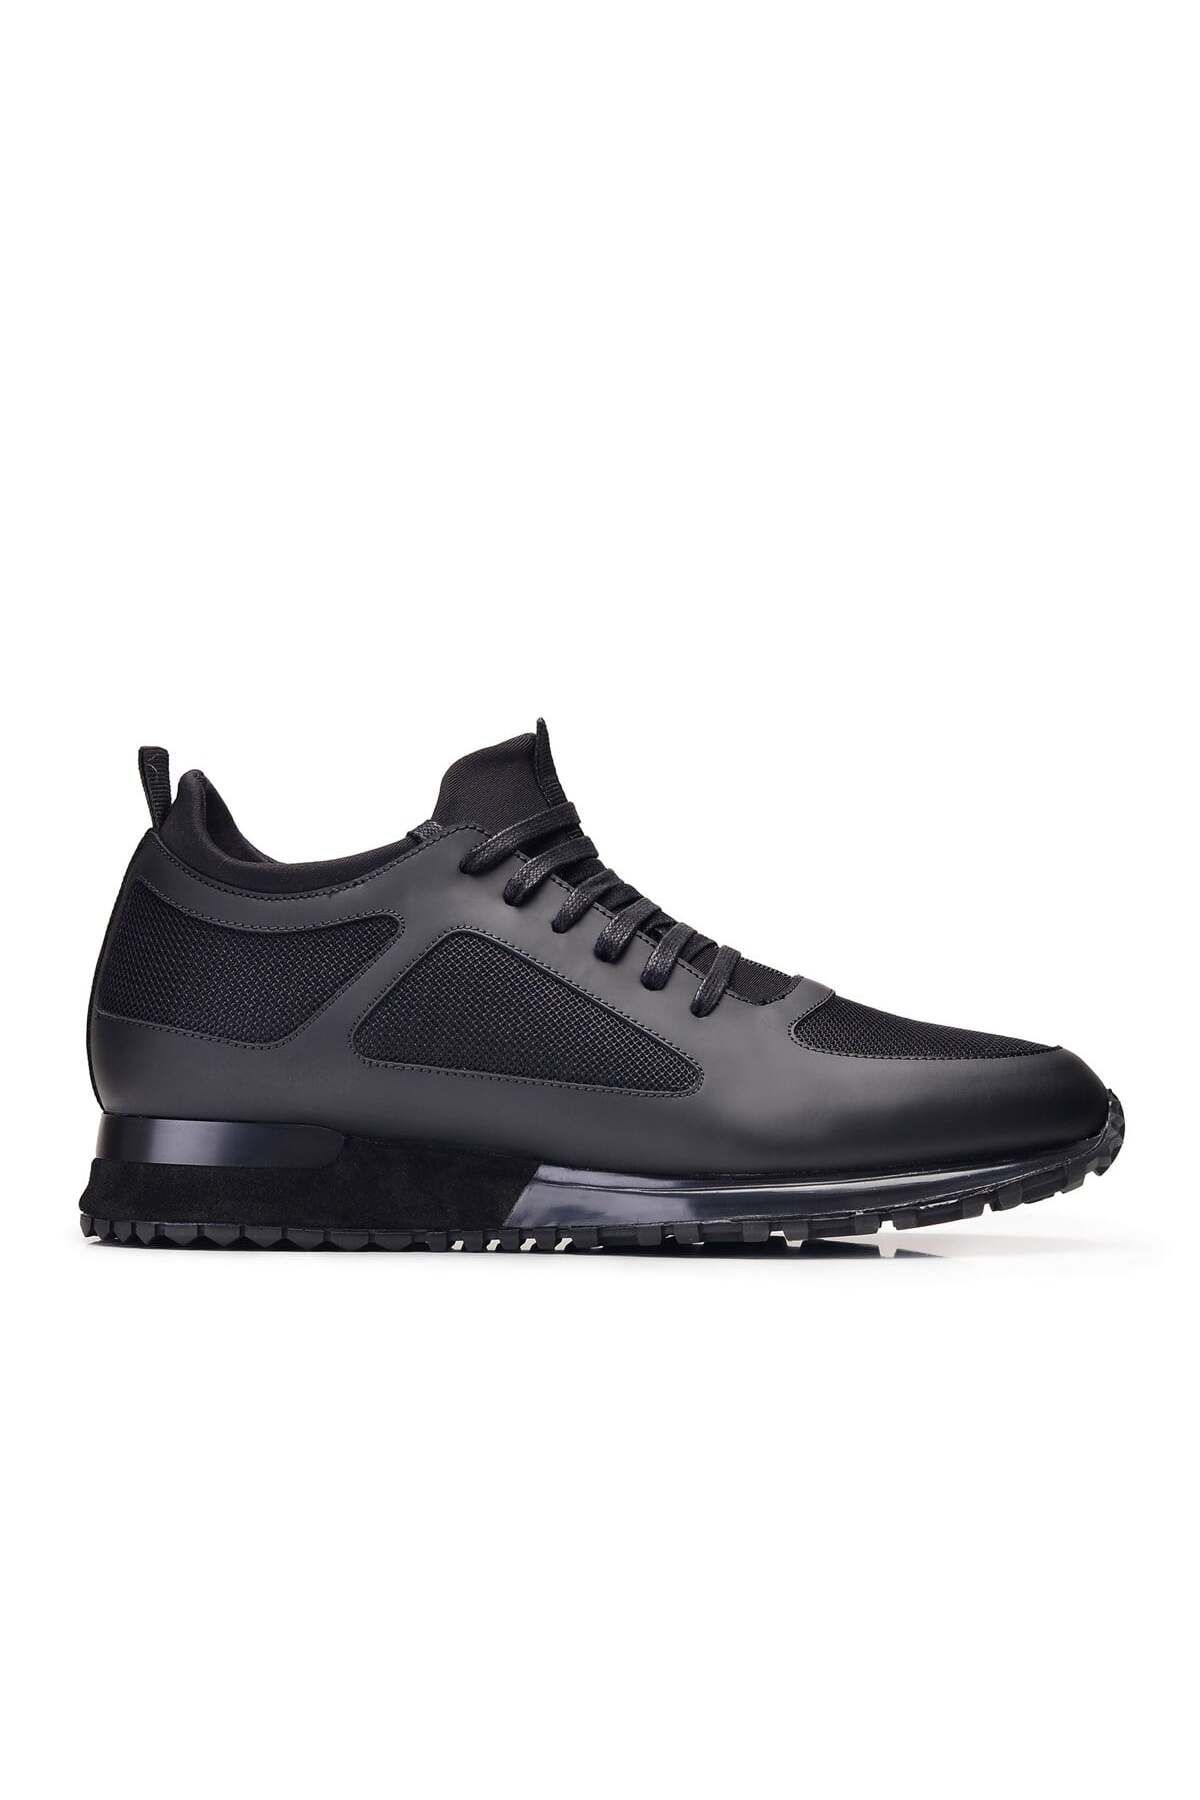 Nevzat Onay Siyah Sneaker Erkek Ayakkabı -11980-